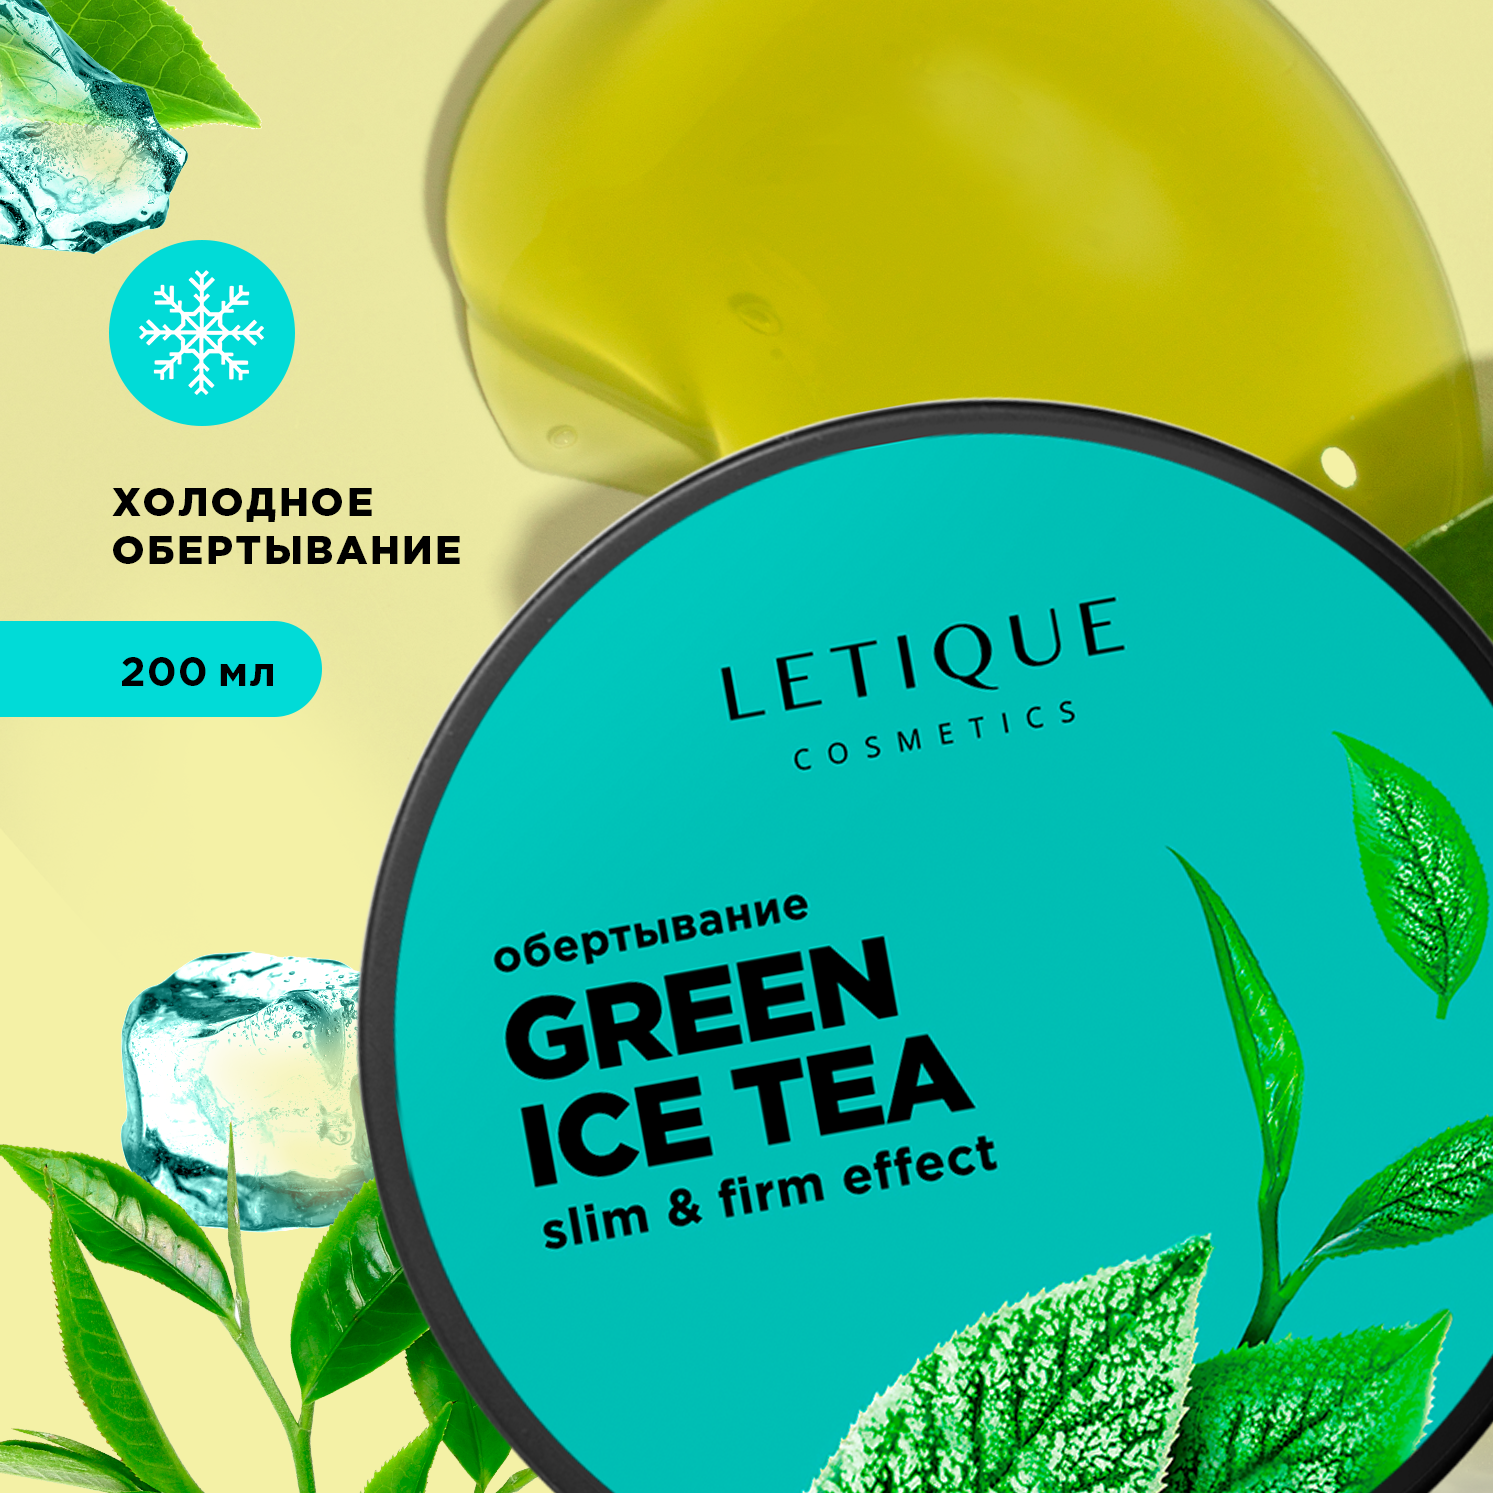 Обертывание холодное для тела Letique Cosmetics Green Ice Tea letique cosmetics горячий тройной антицеллюлитный комплекс с кофе